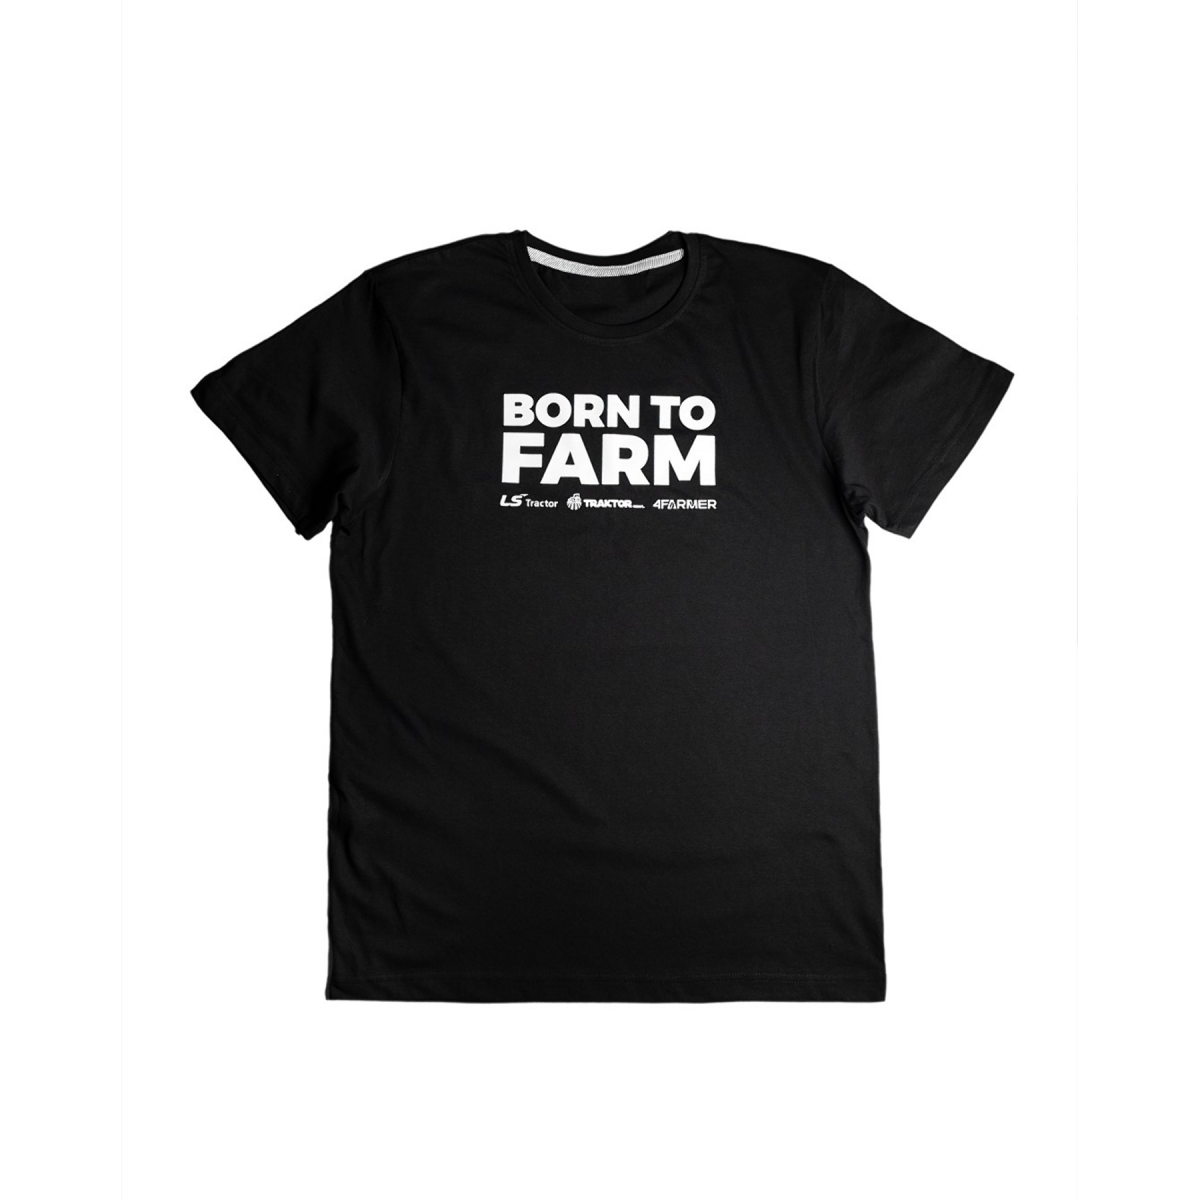 "BORN TO FARM" T-shirt for men